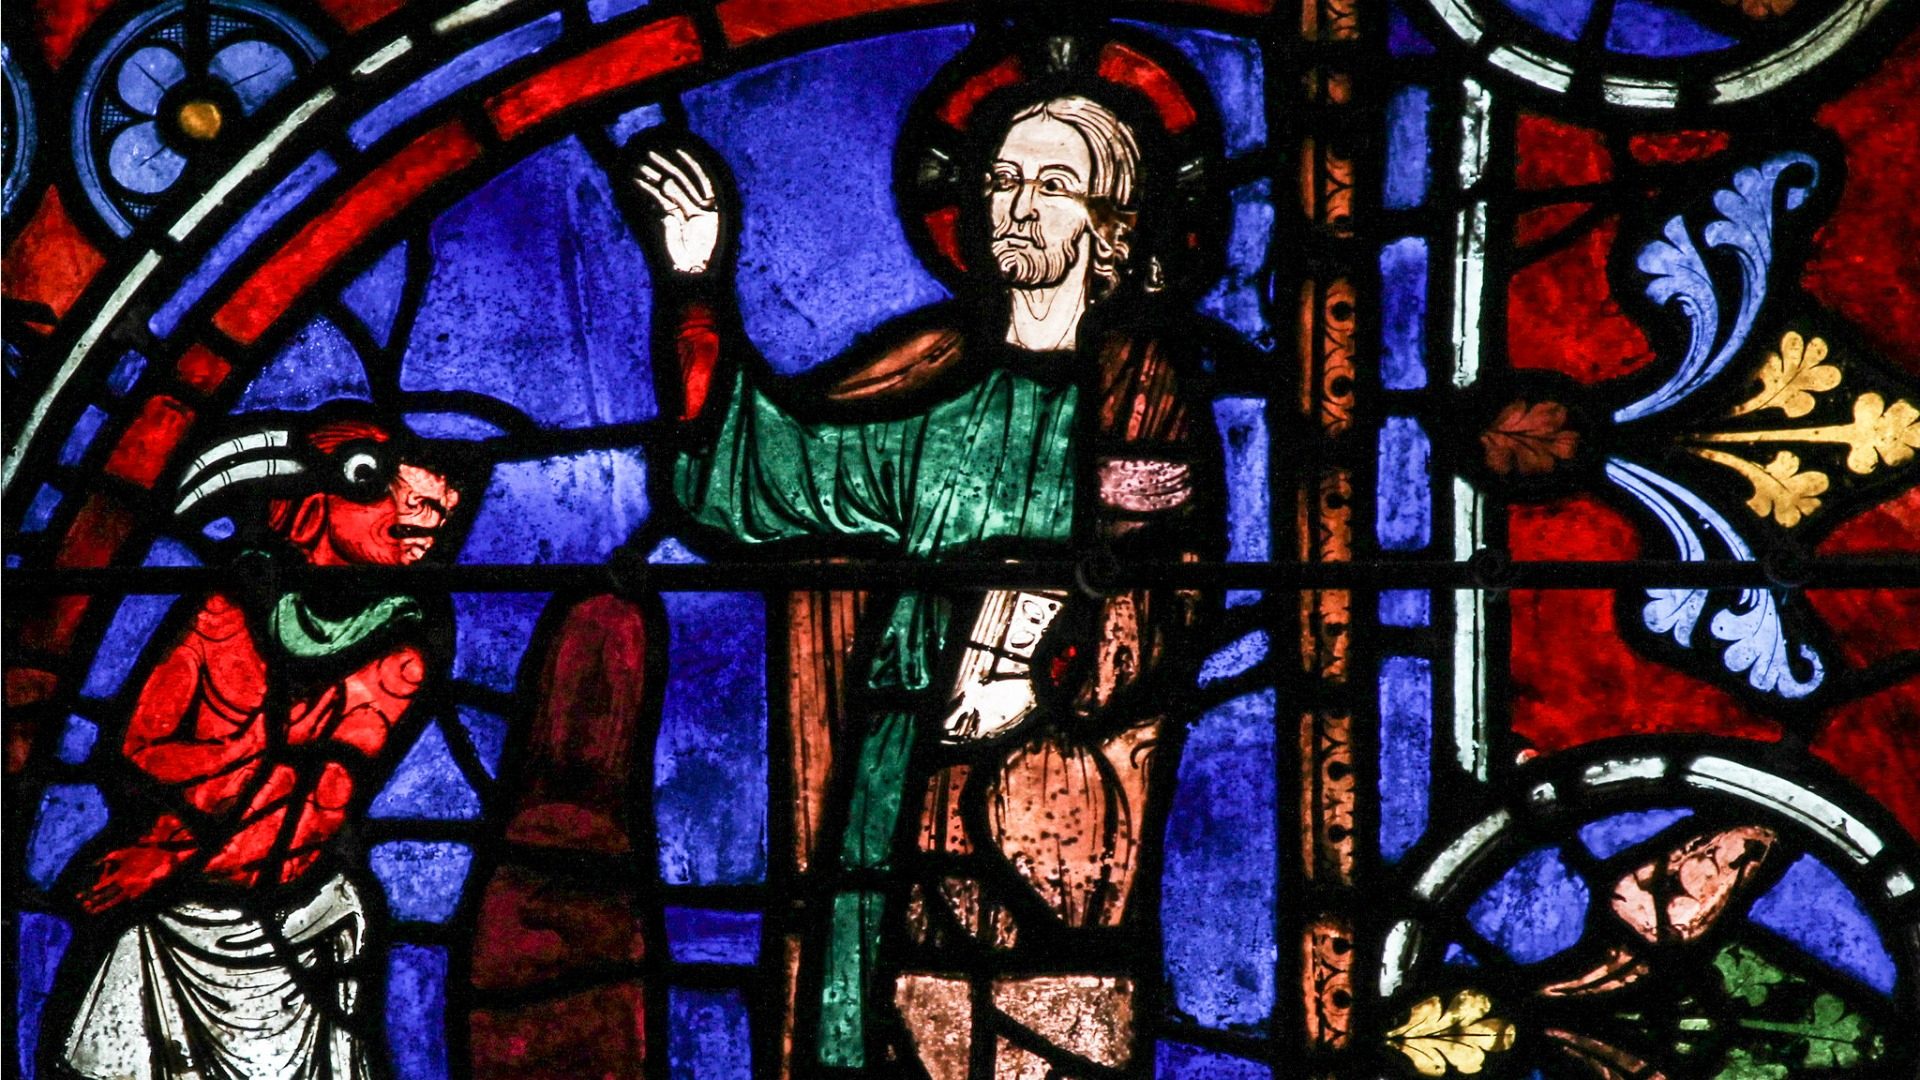 "Alors Jésus fut conduit au désert par l’Esprit pour être tenté par le diable." (Photo: Flickr/Lawrence OP/CC BY-NC-ND 2.0)
Détail d'un vitrai - Cathédrale de Chartres.